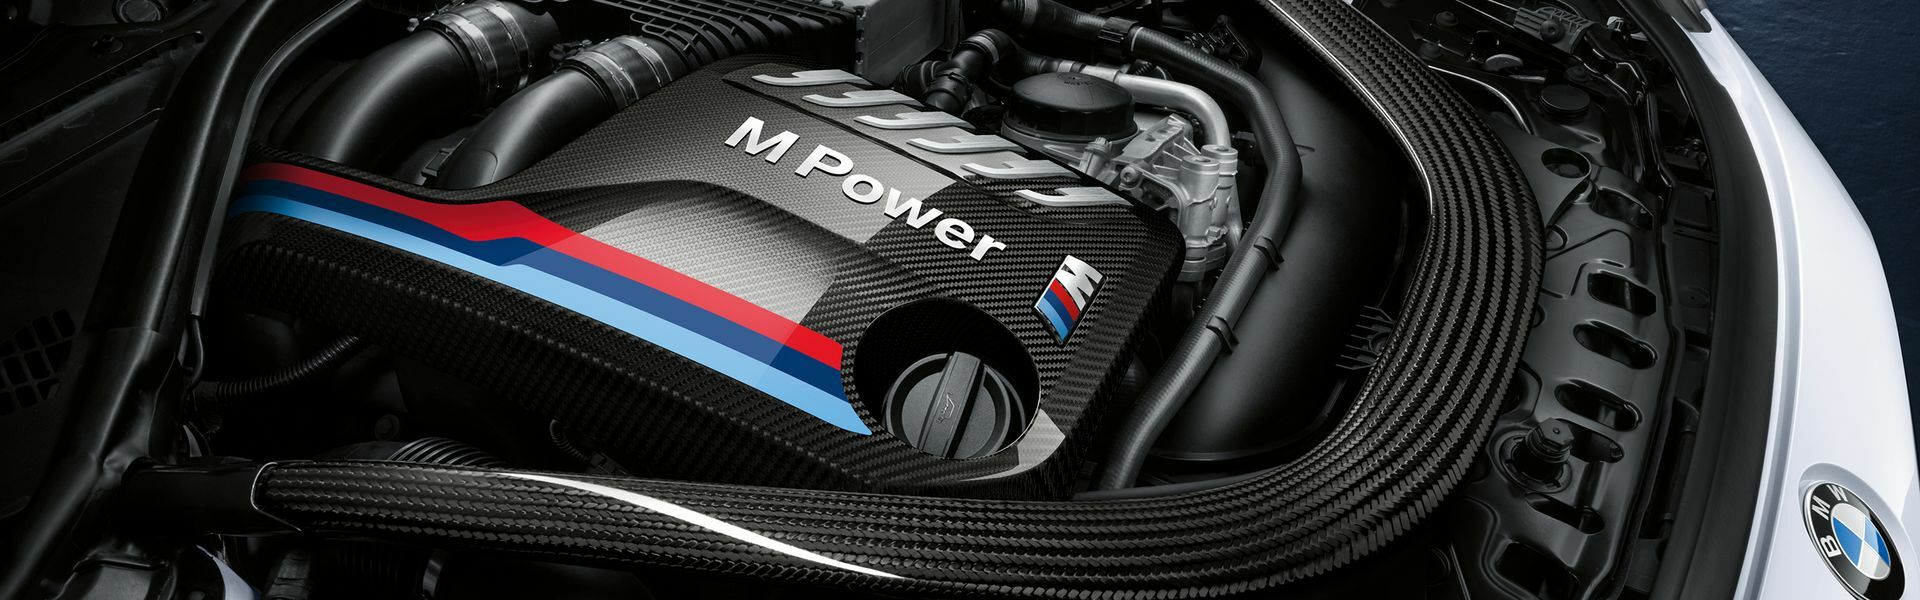 Zvýšení výkonu/ Softwarové úpravy/ Drobné performance díly pro automobil Porsche 911 GT2/RS 997